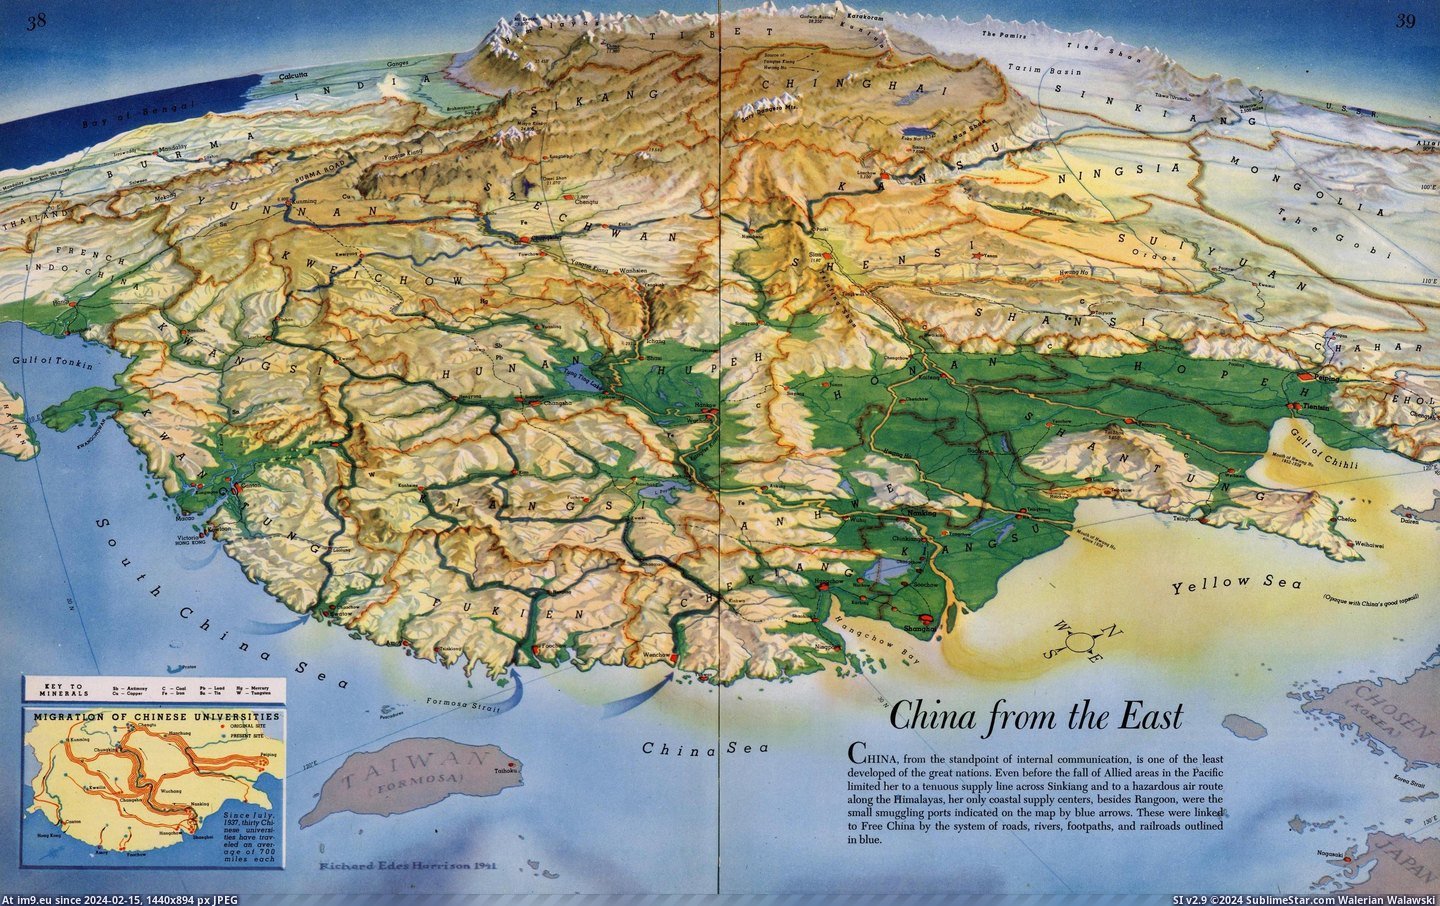 #Relief #Occidental #Orientation #Orient [Mapporn] Occidental orientation of the Orient in relief, 1941 [2867x1792] Pic. (Bild von album My r/MAPS favs))